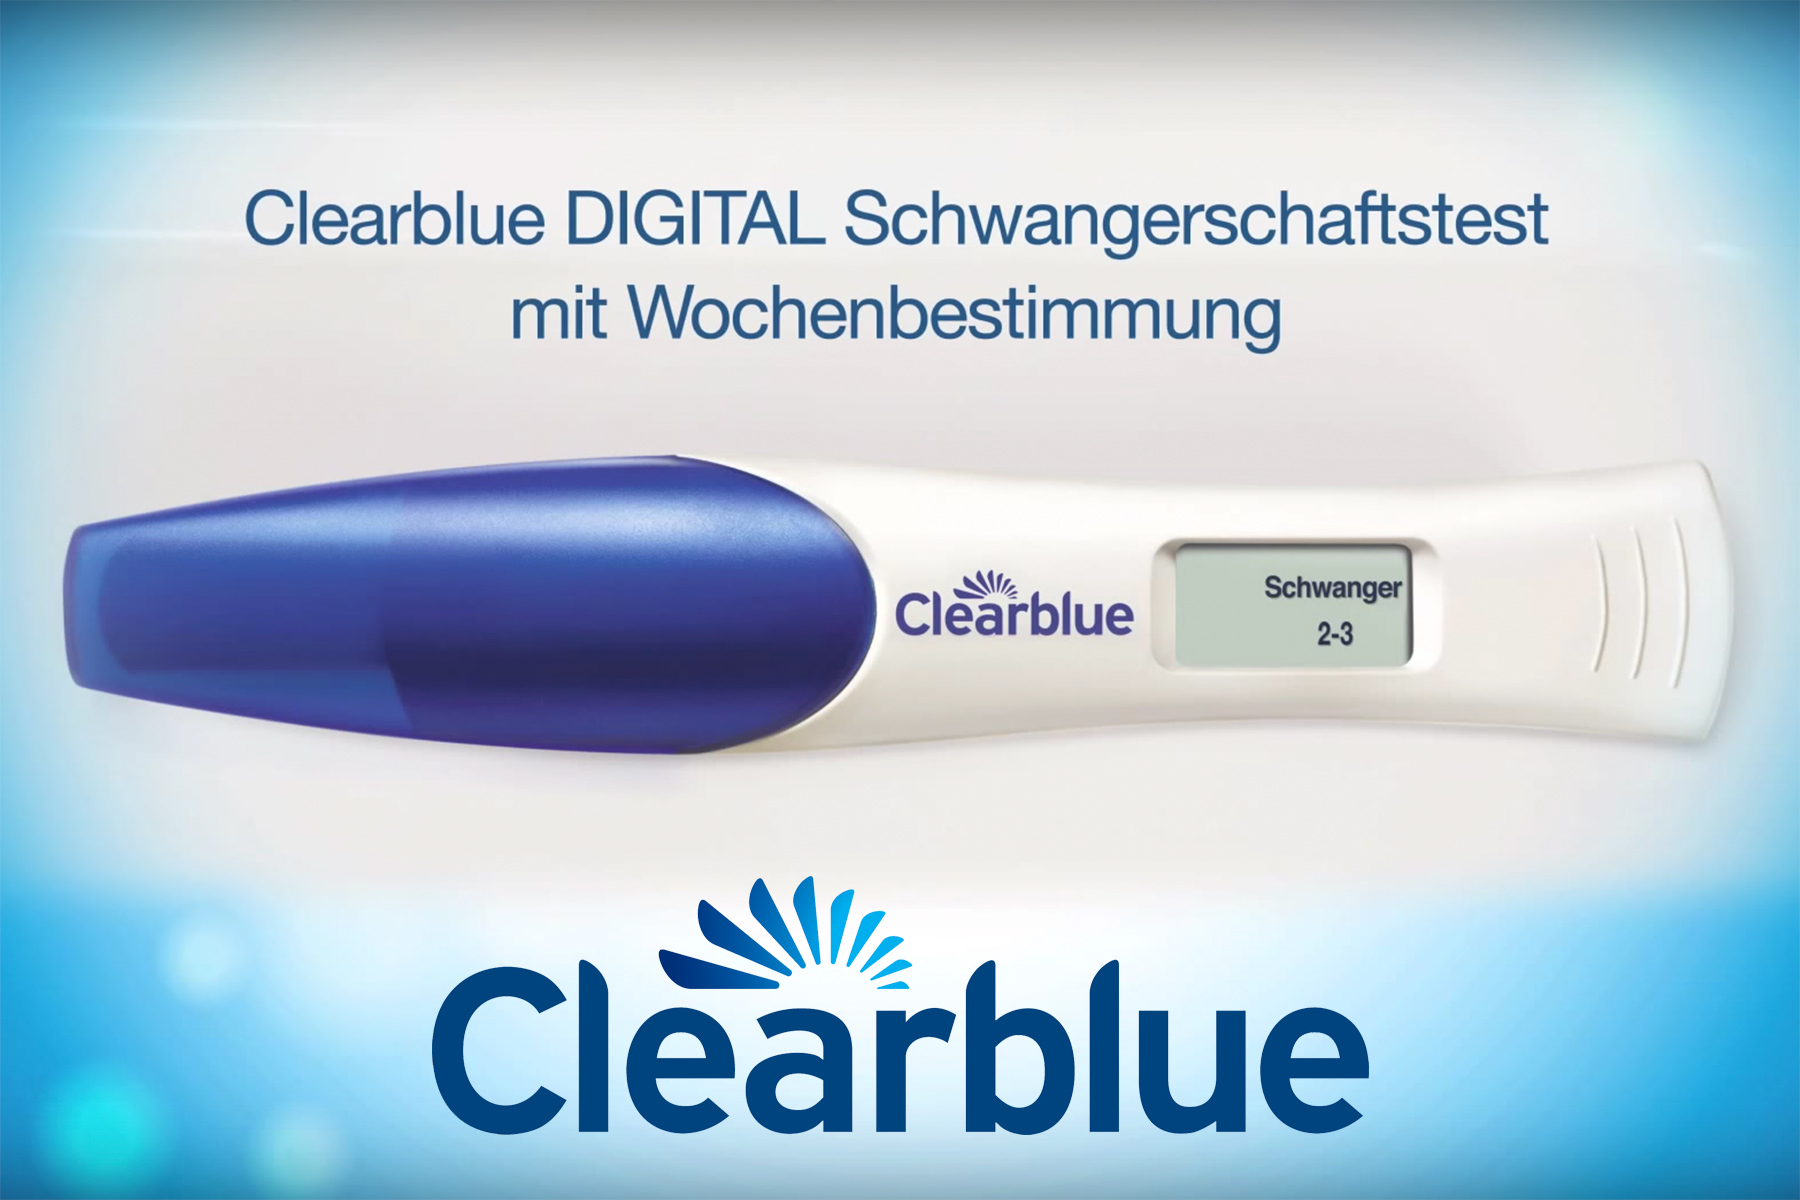 2 x Clearblue Schwangerschaftstest Digital mit Wochenbestimmung 5 Markentests 